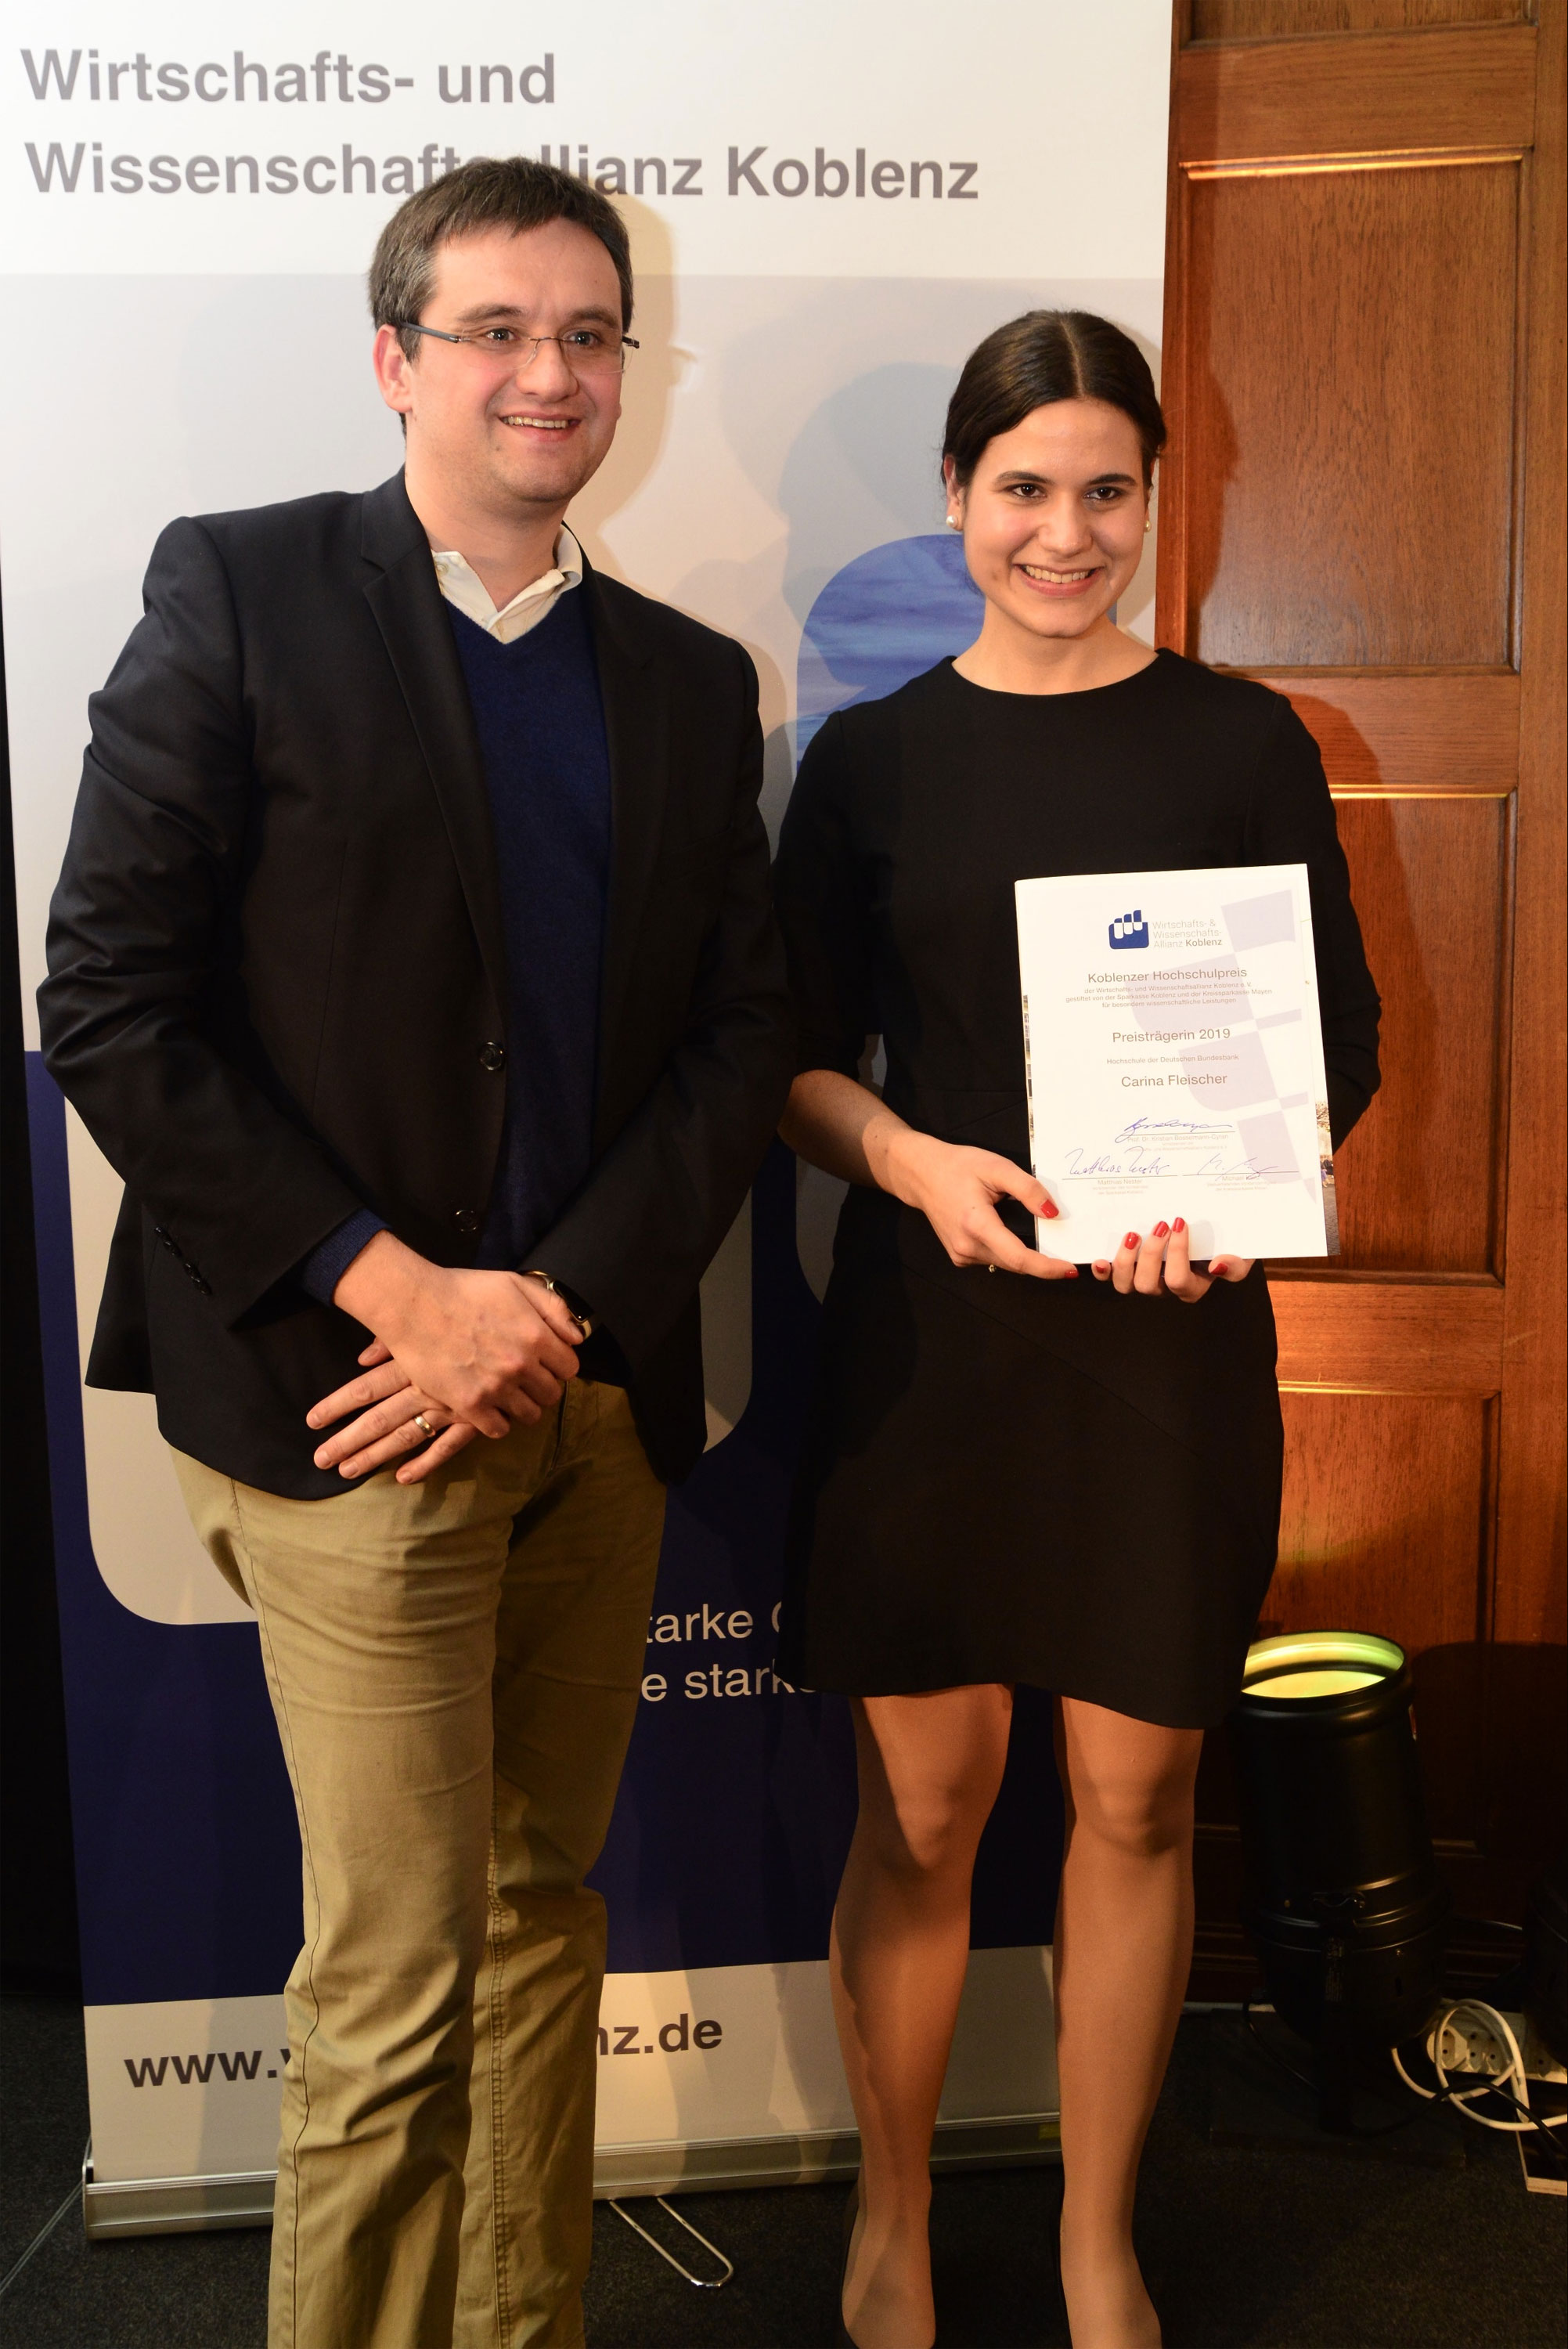  Christopher Priberny und Preisträgerin Carina Fleischer bei der Hochschulpreisverleihung 2019